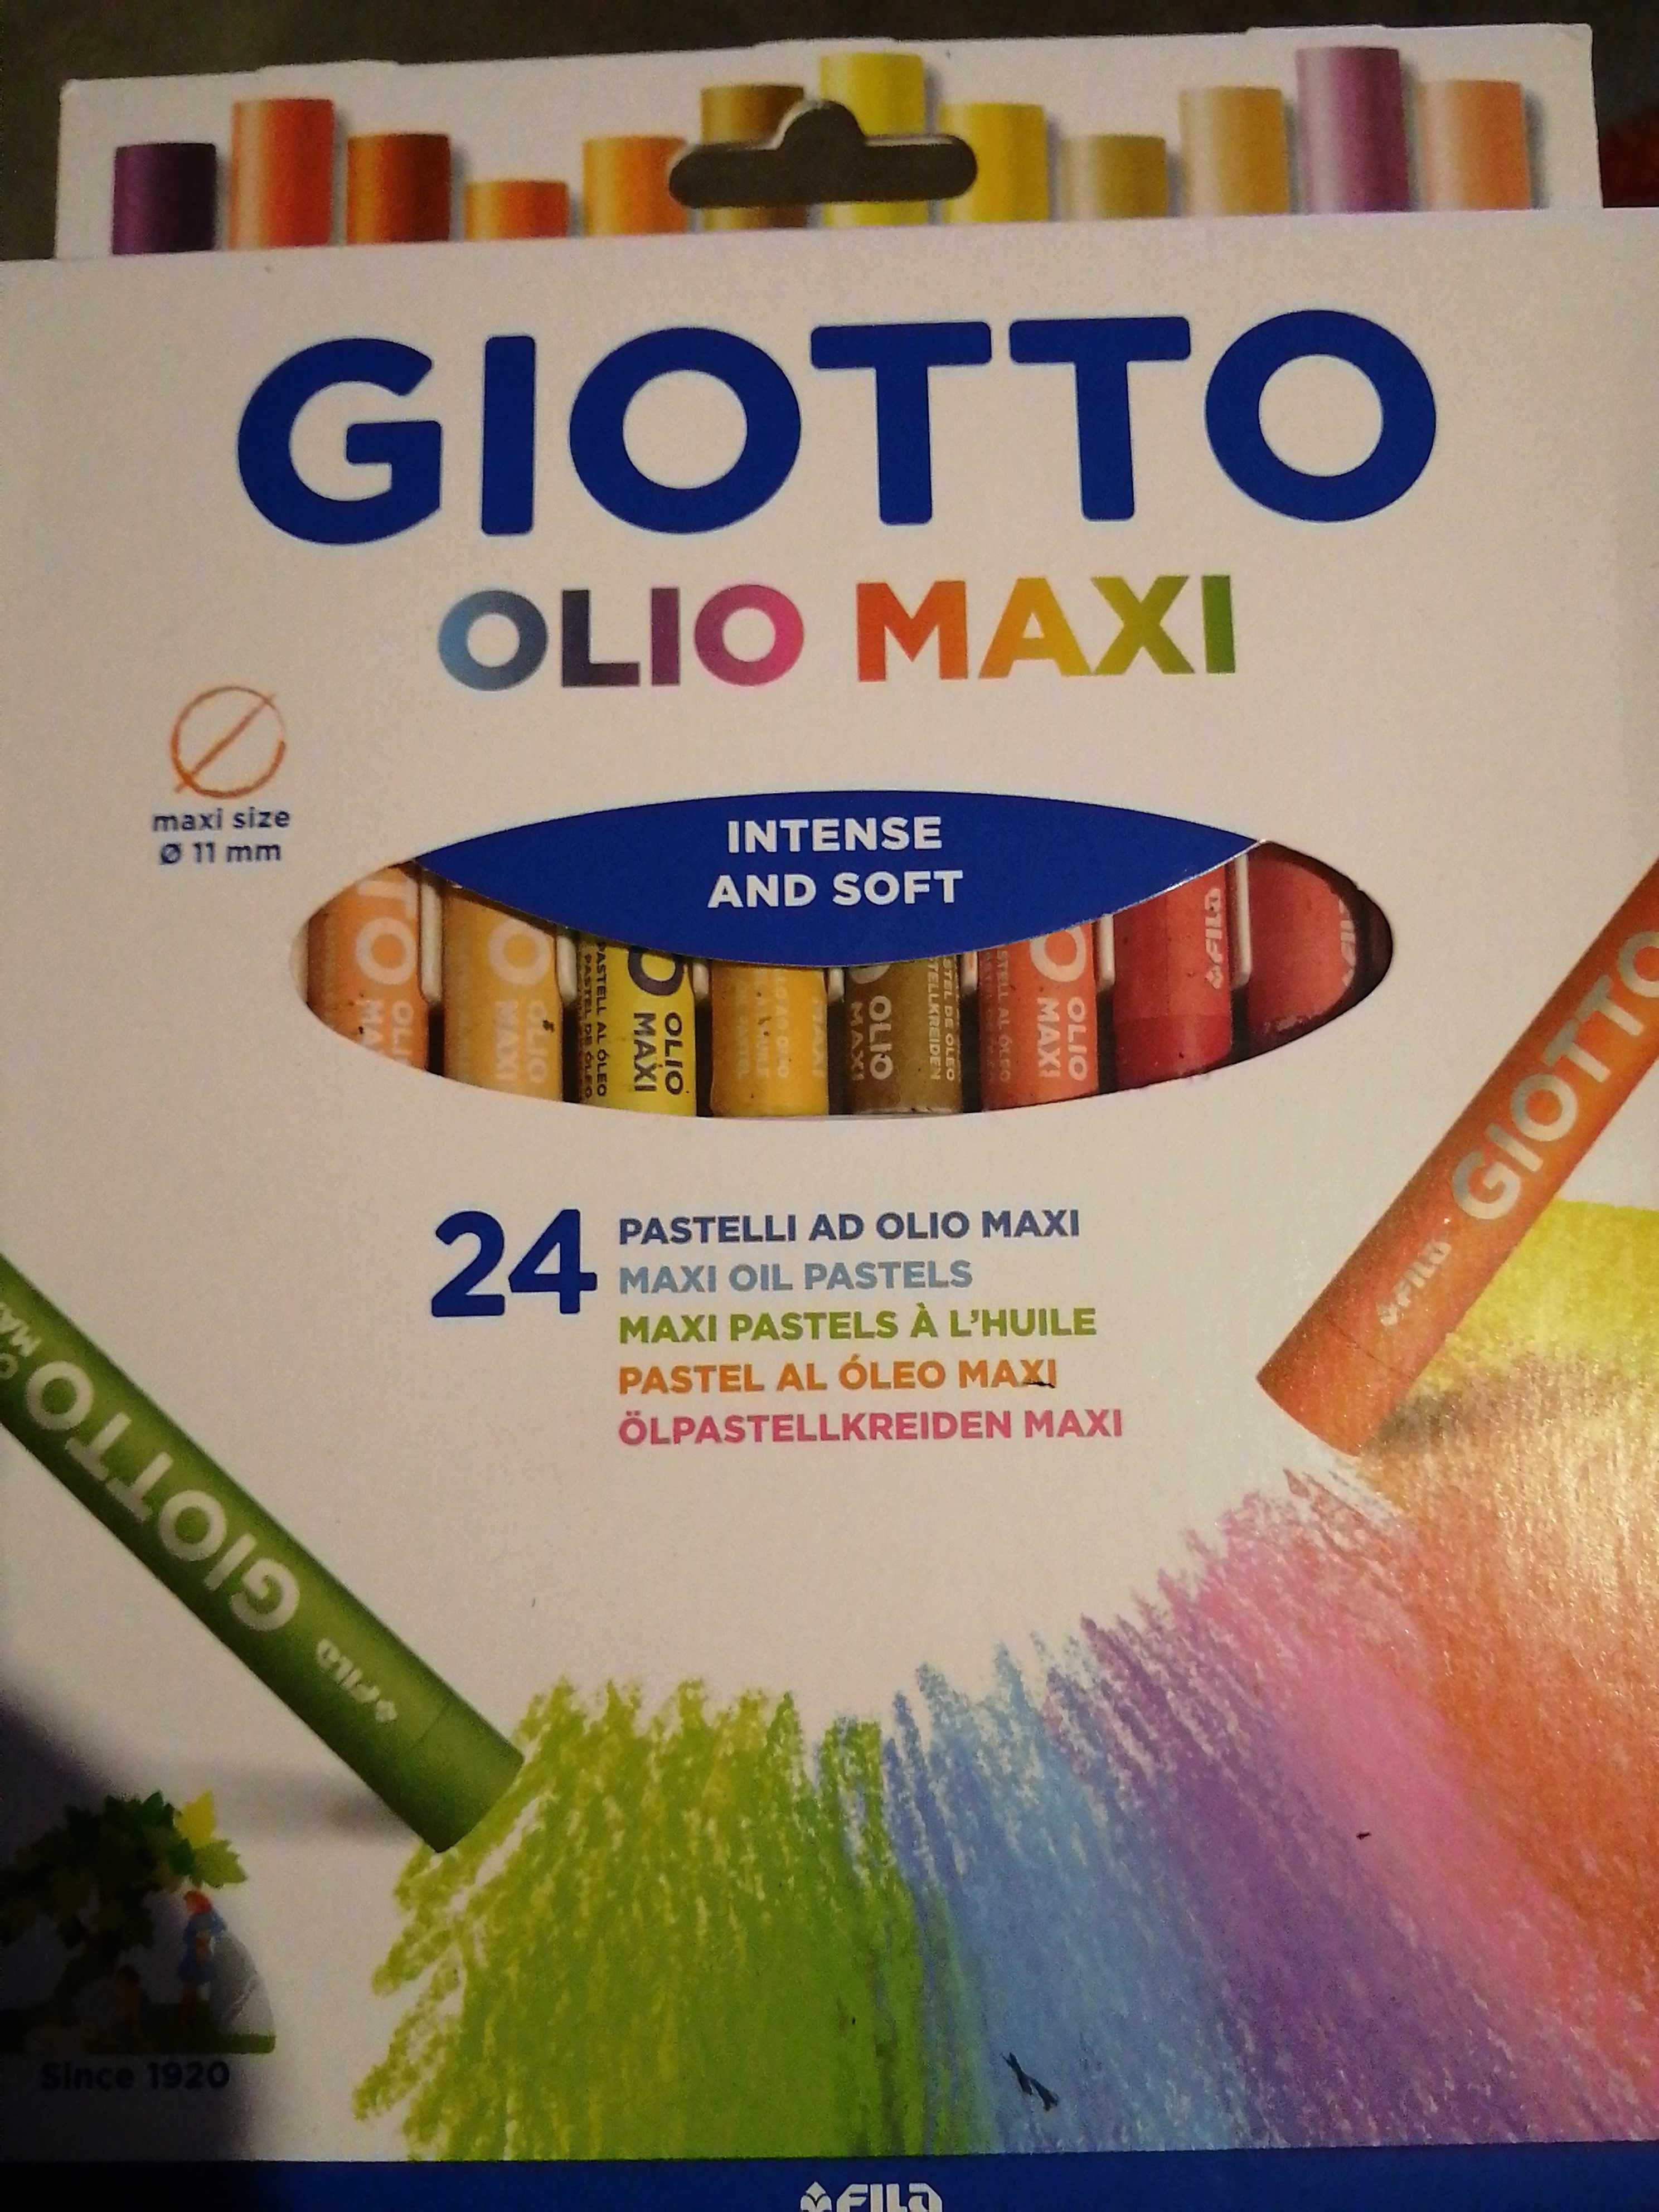 Giotto Olio Maxi